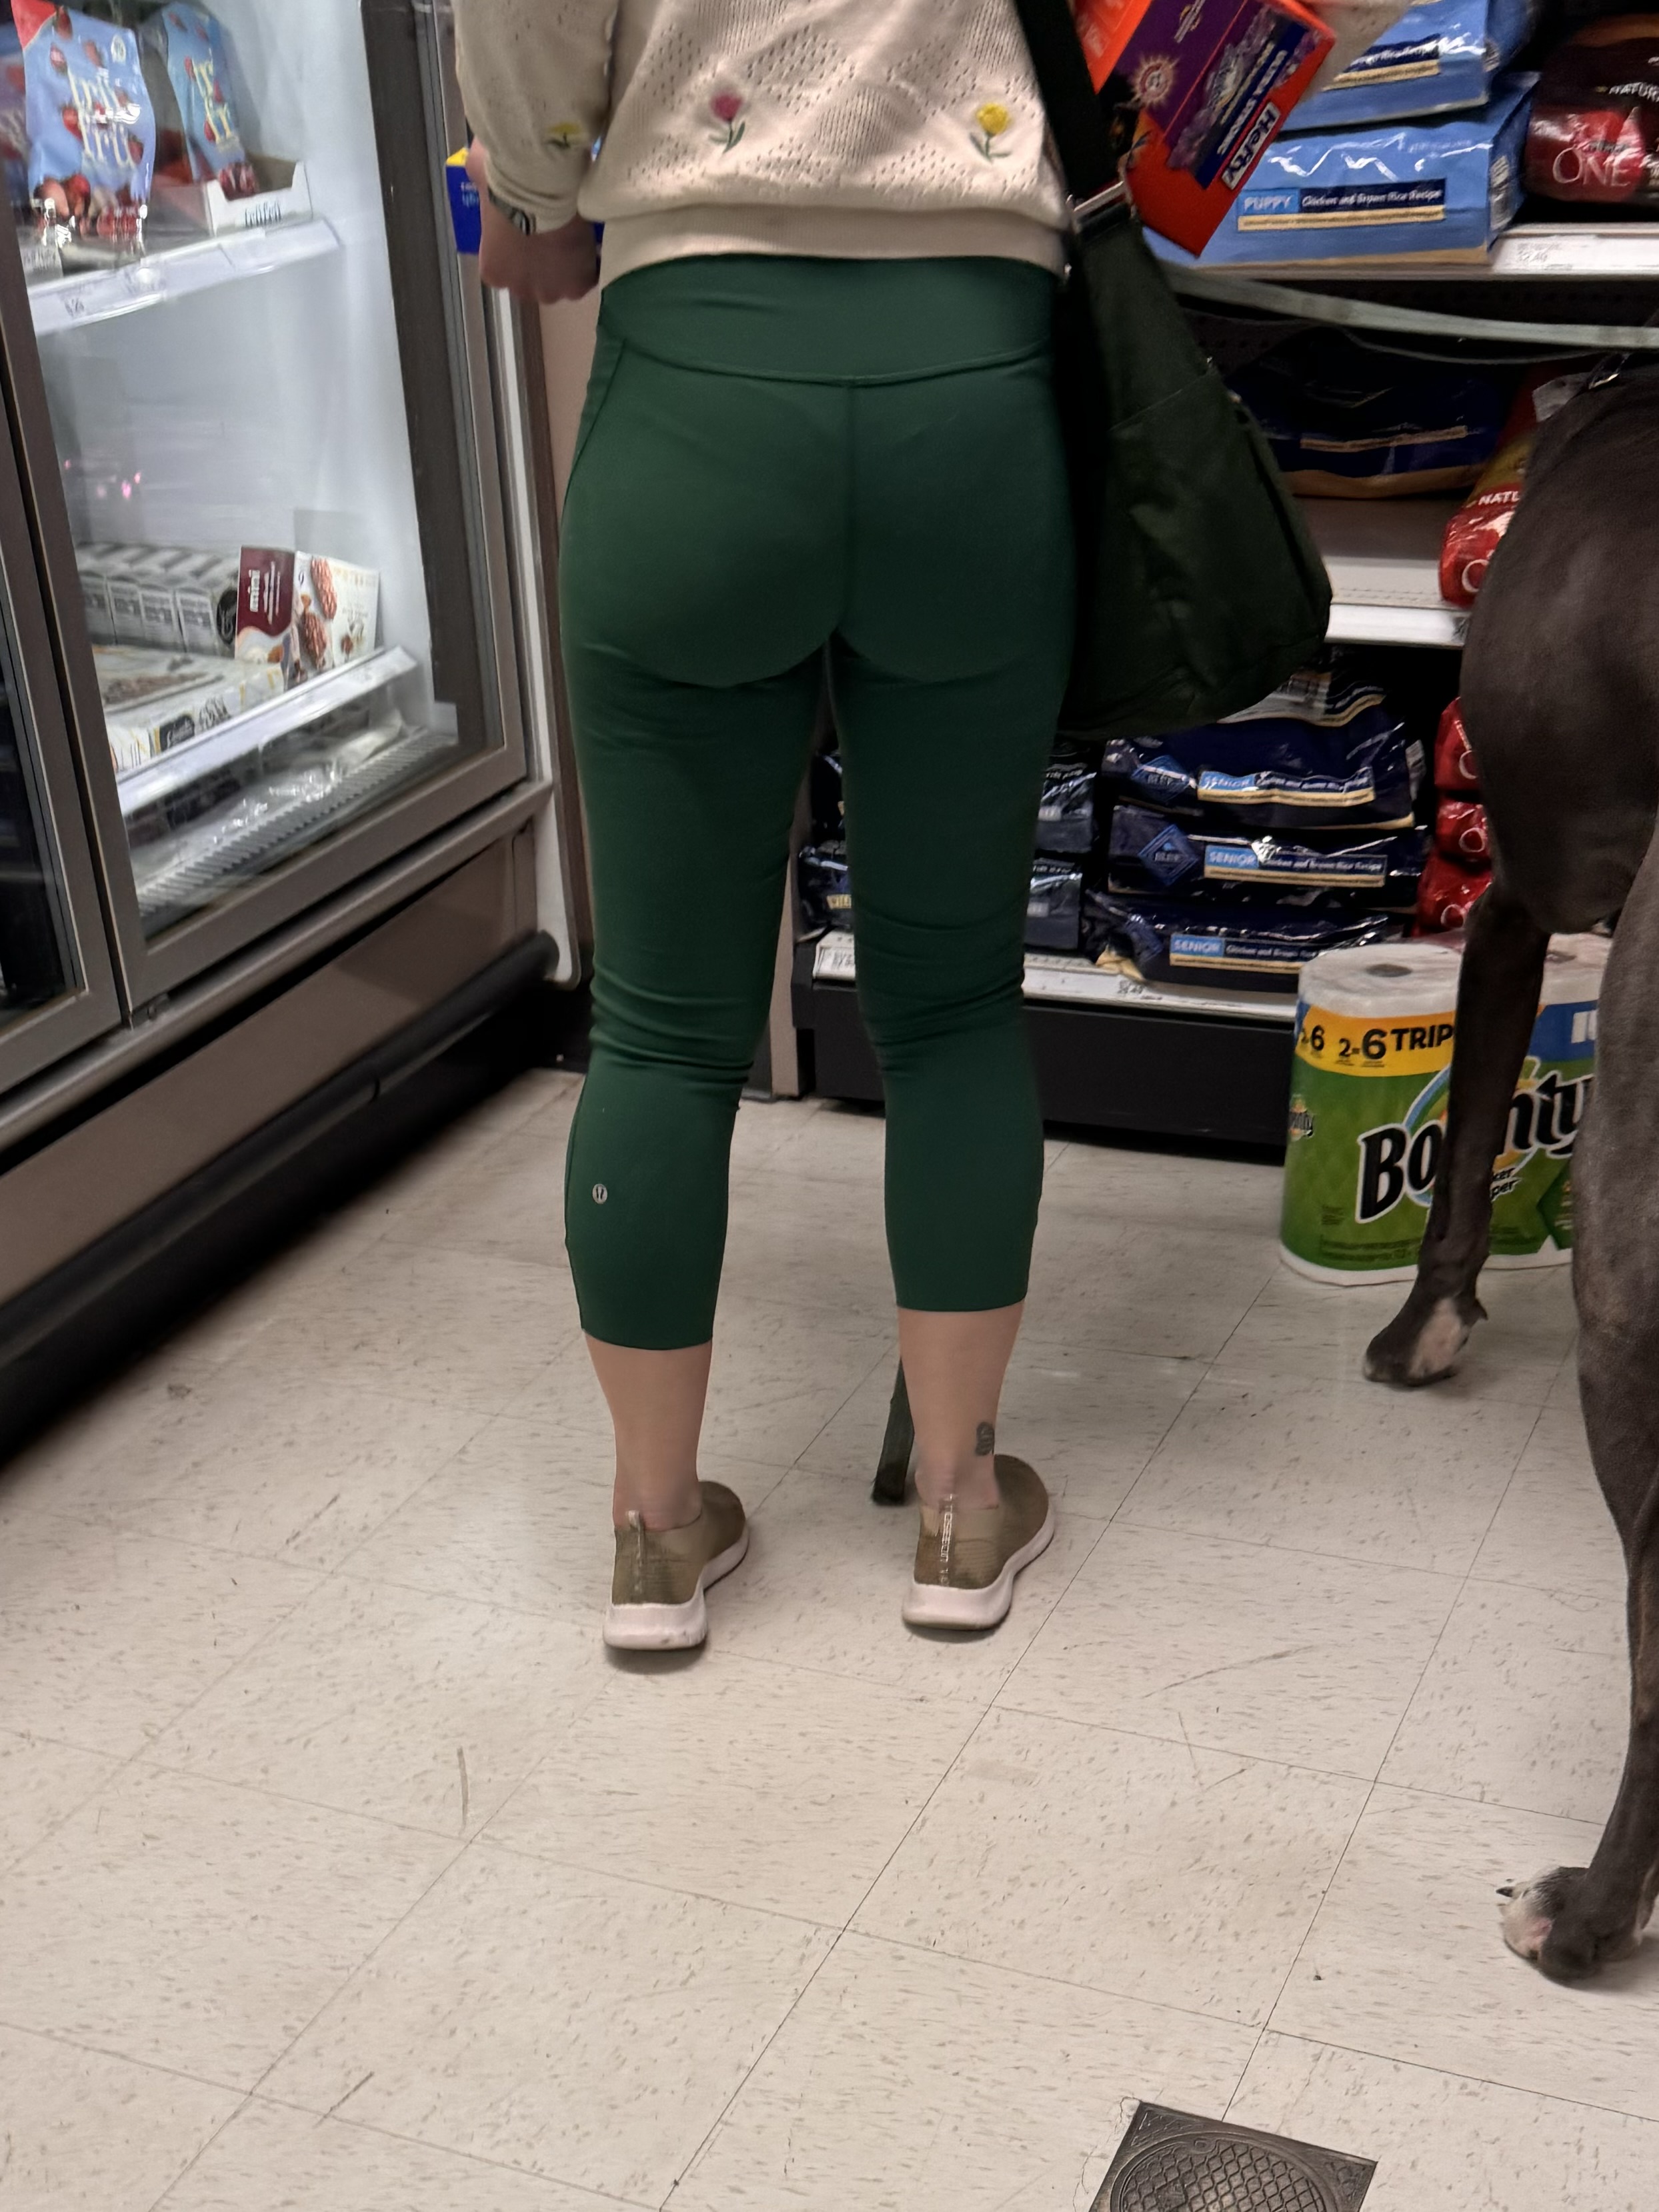 Thick booty MILF in green lululemon leggings [OC] - Spandex